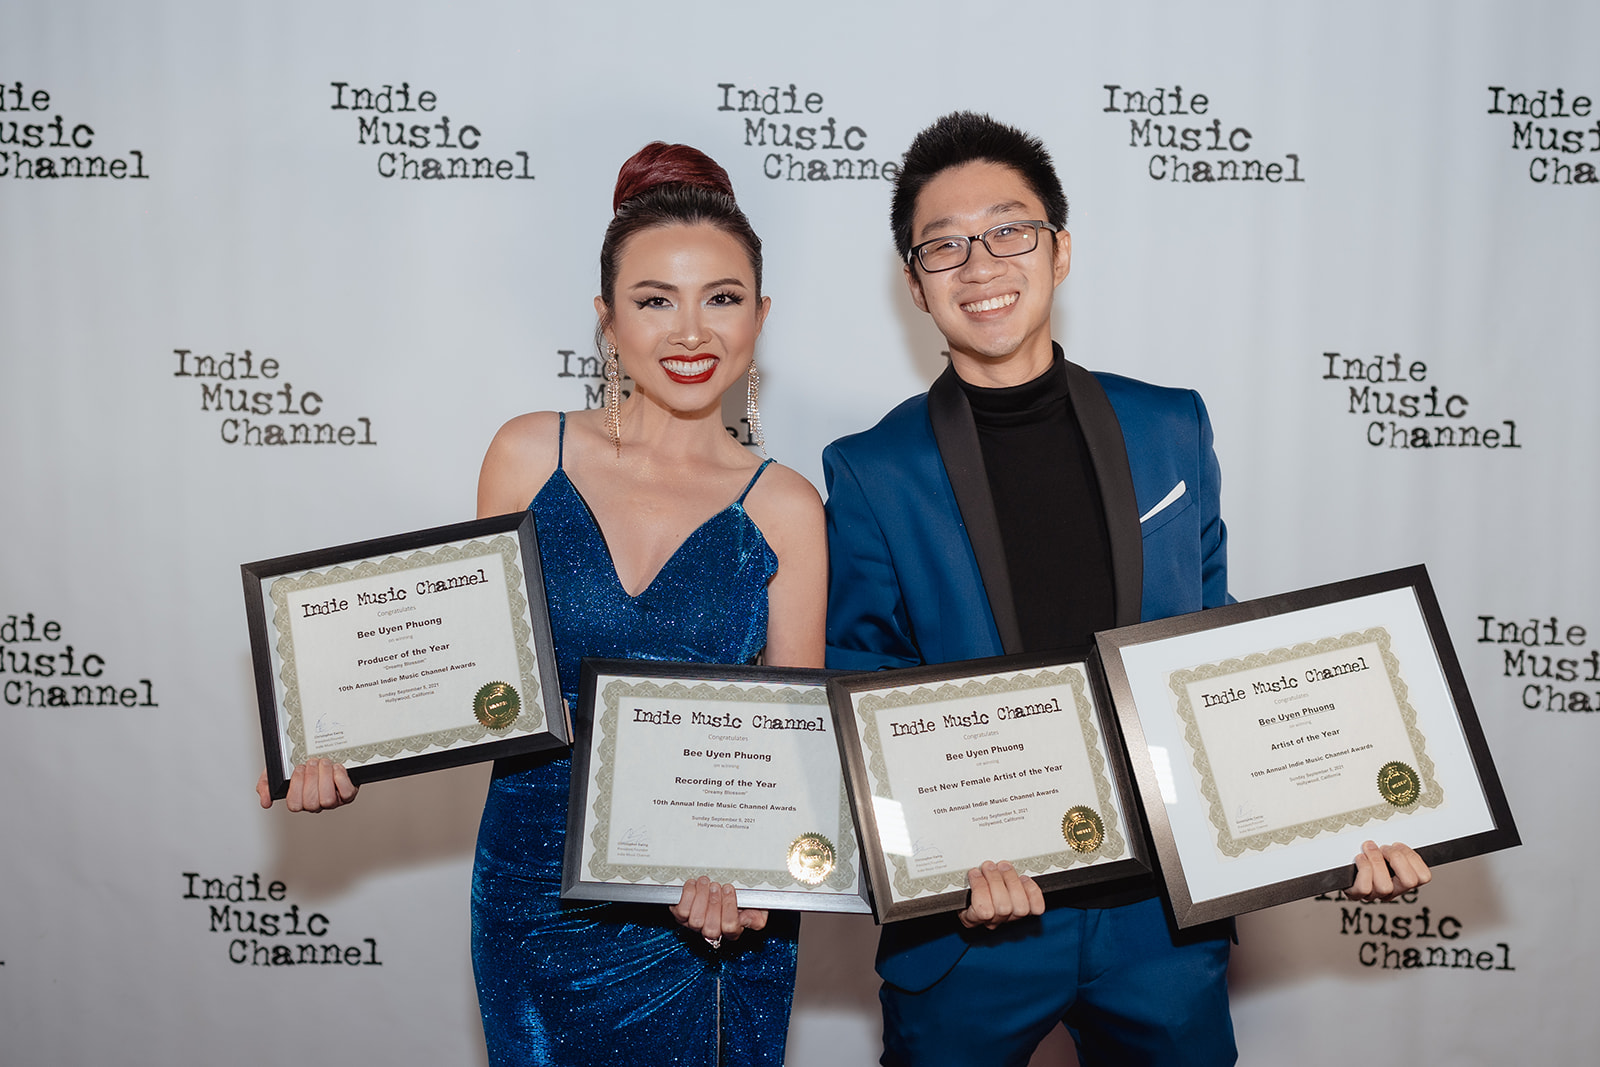 Bee Uyên Phương và Duy Trần nhận ‘cơn mưa’ giải thưởng tại lễ trao giải Indie Music Channel 